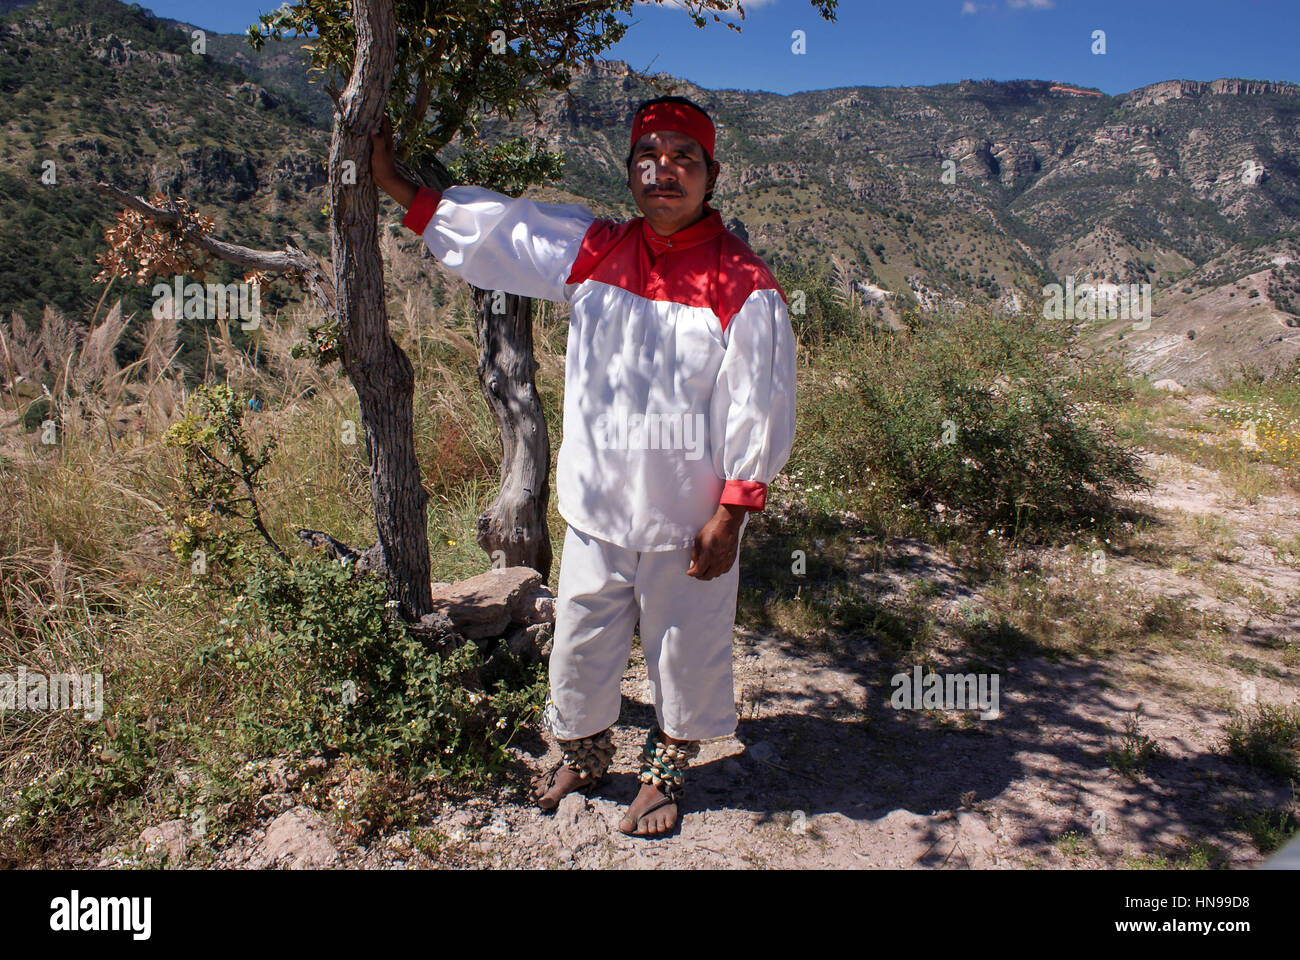 Chihuahua Mexico Tarahumara People Fotos E Imagenes De Stock Alamy